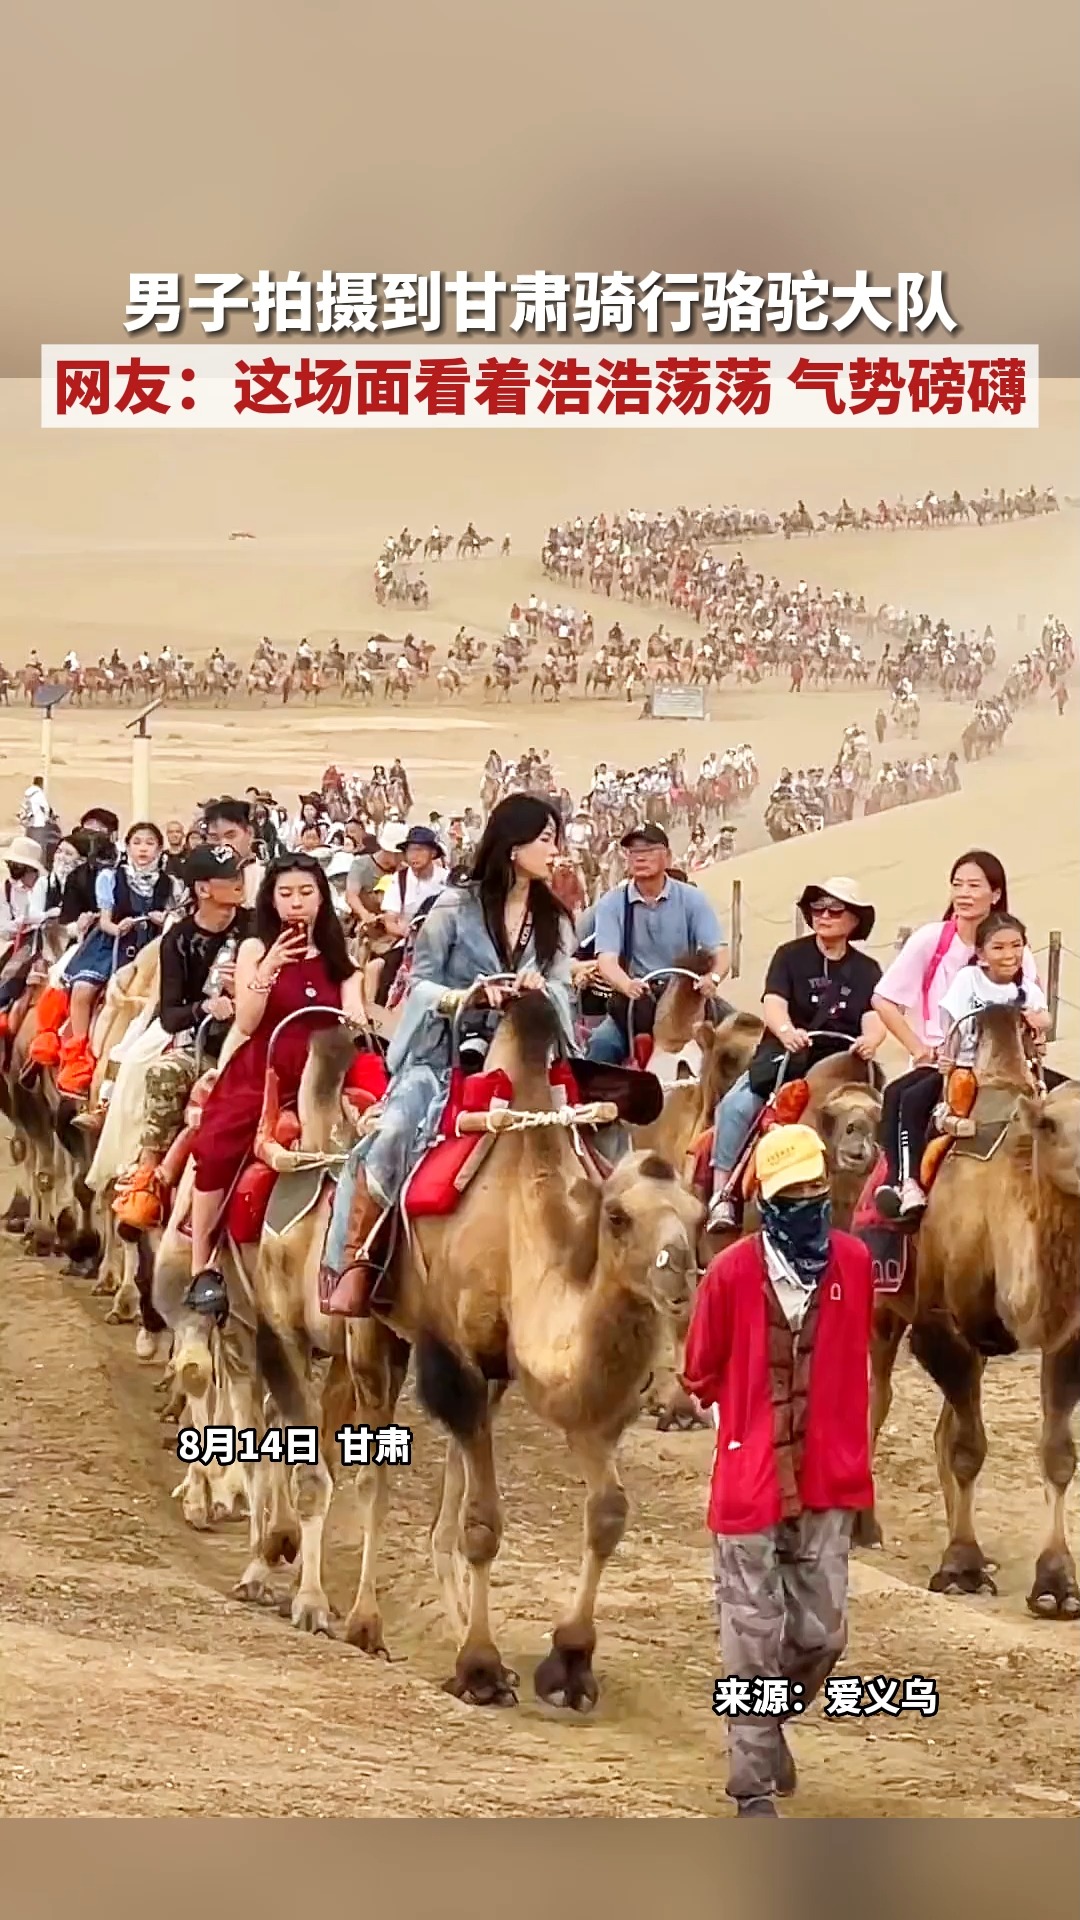 男子拍摄到甘肃骑行骆驼大队 网友：这场面看着浩浩荡荡 气势磅礴